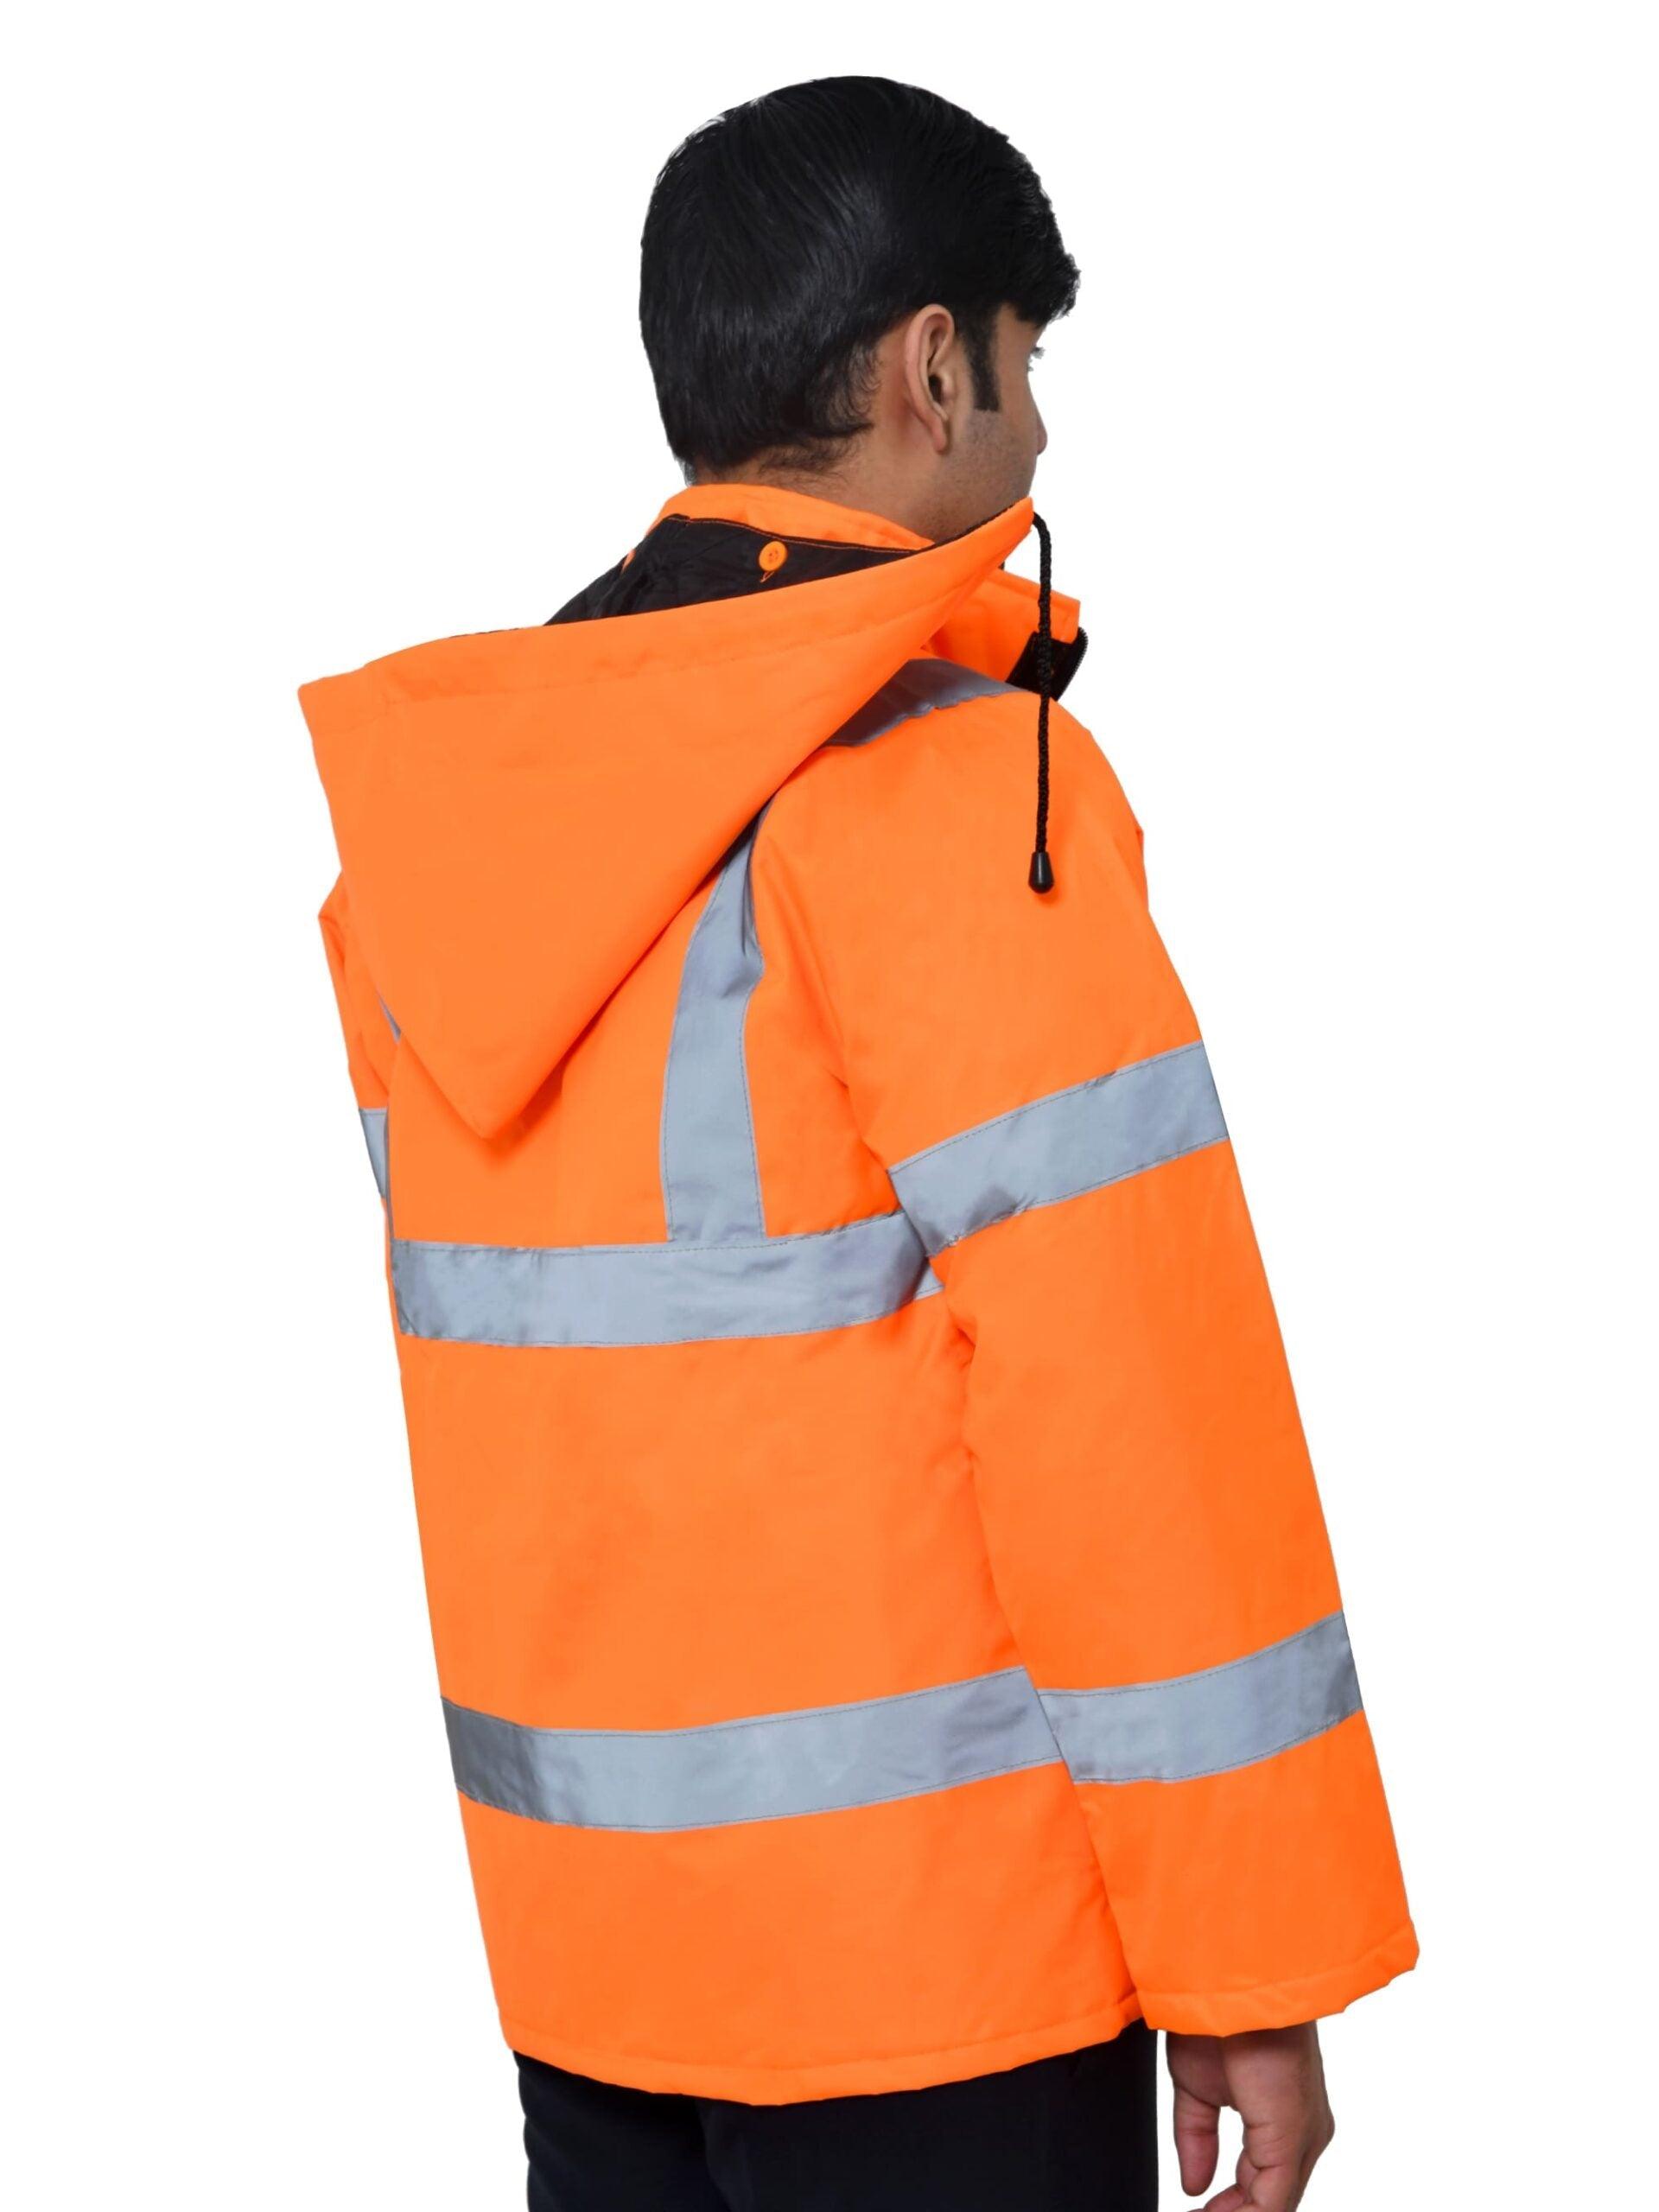 Orange Safety Jacket Reflective Work Uniform Vest For Worker Visibility  Stock Illustration - Download Image Now - iStock